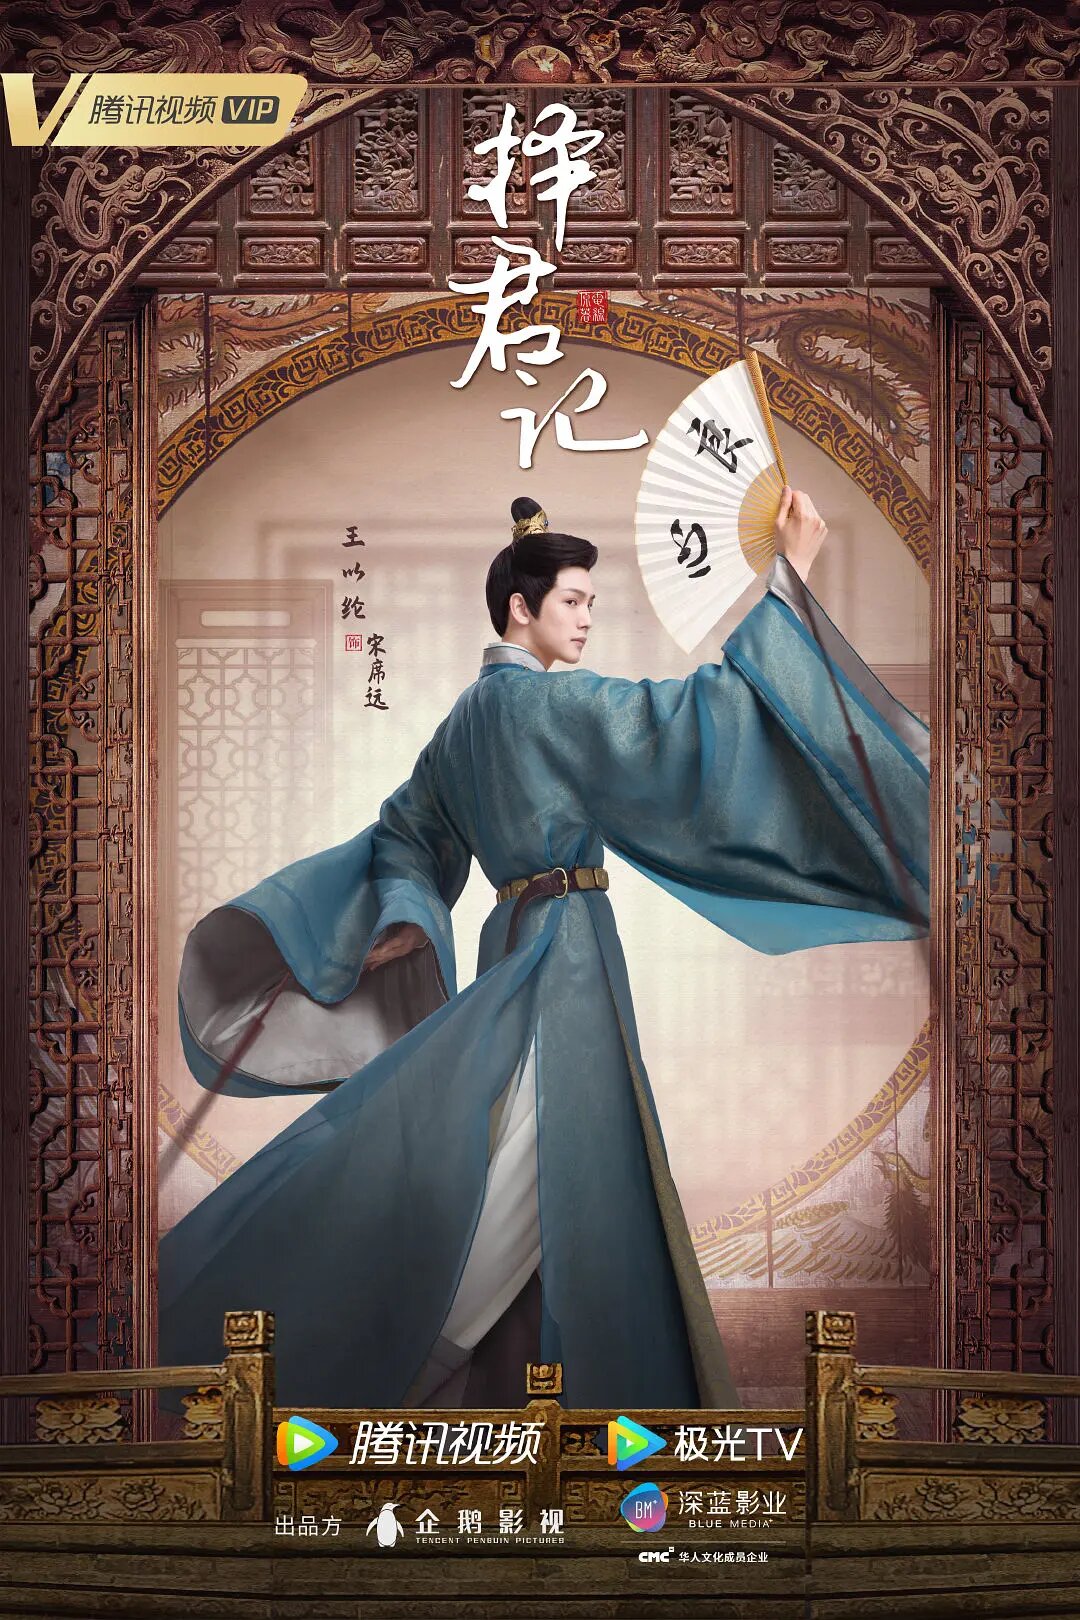 Song Xi Yuan